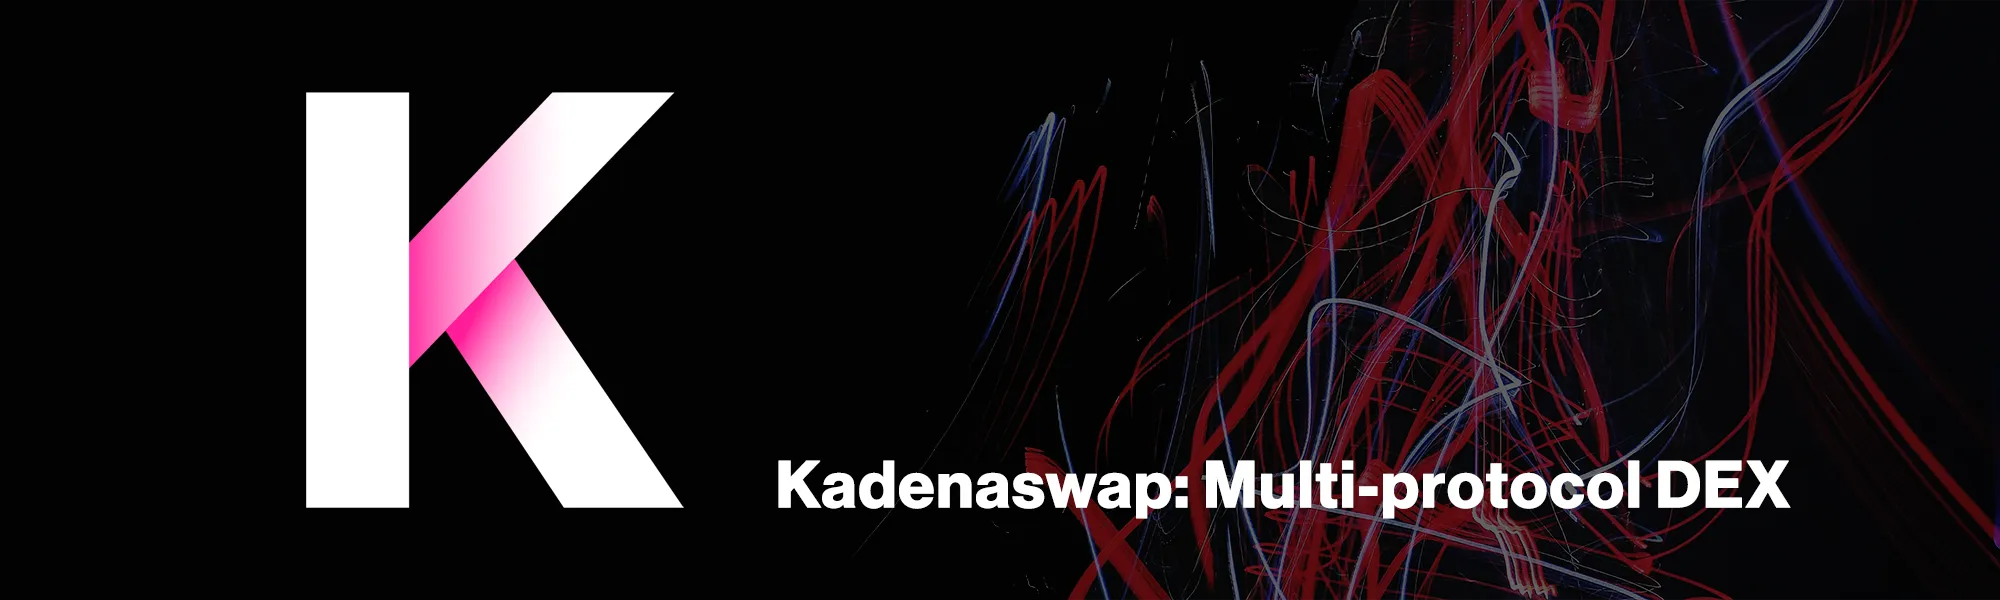 Kadena Embraces DeFi with Multi-protocol Decentralized Exchange Kadenaswap